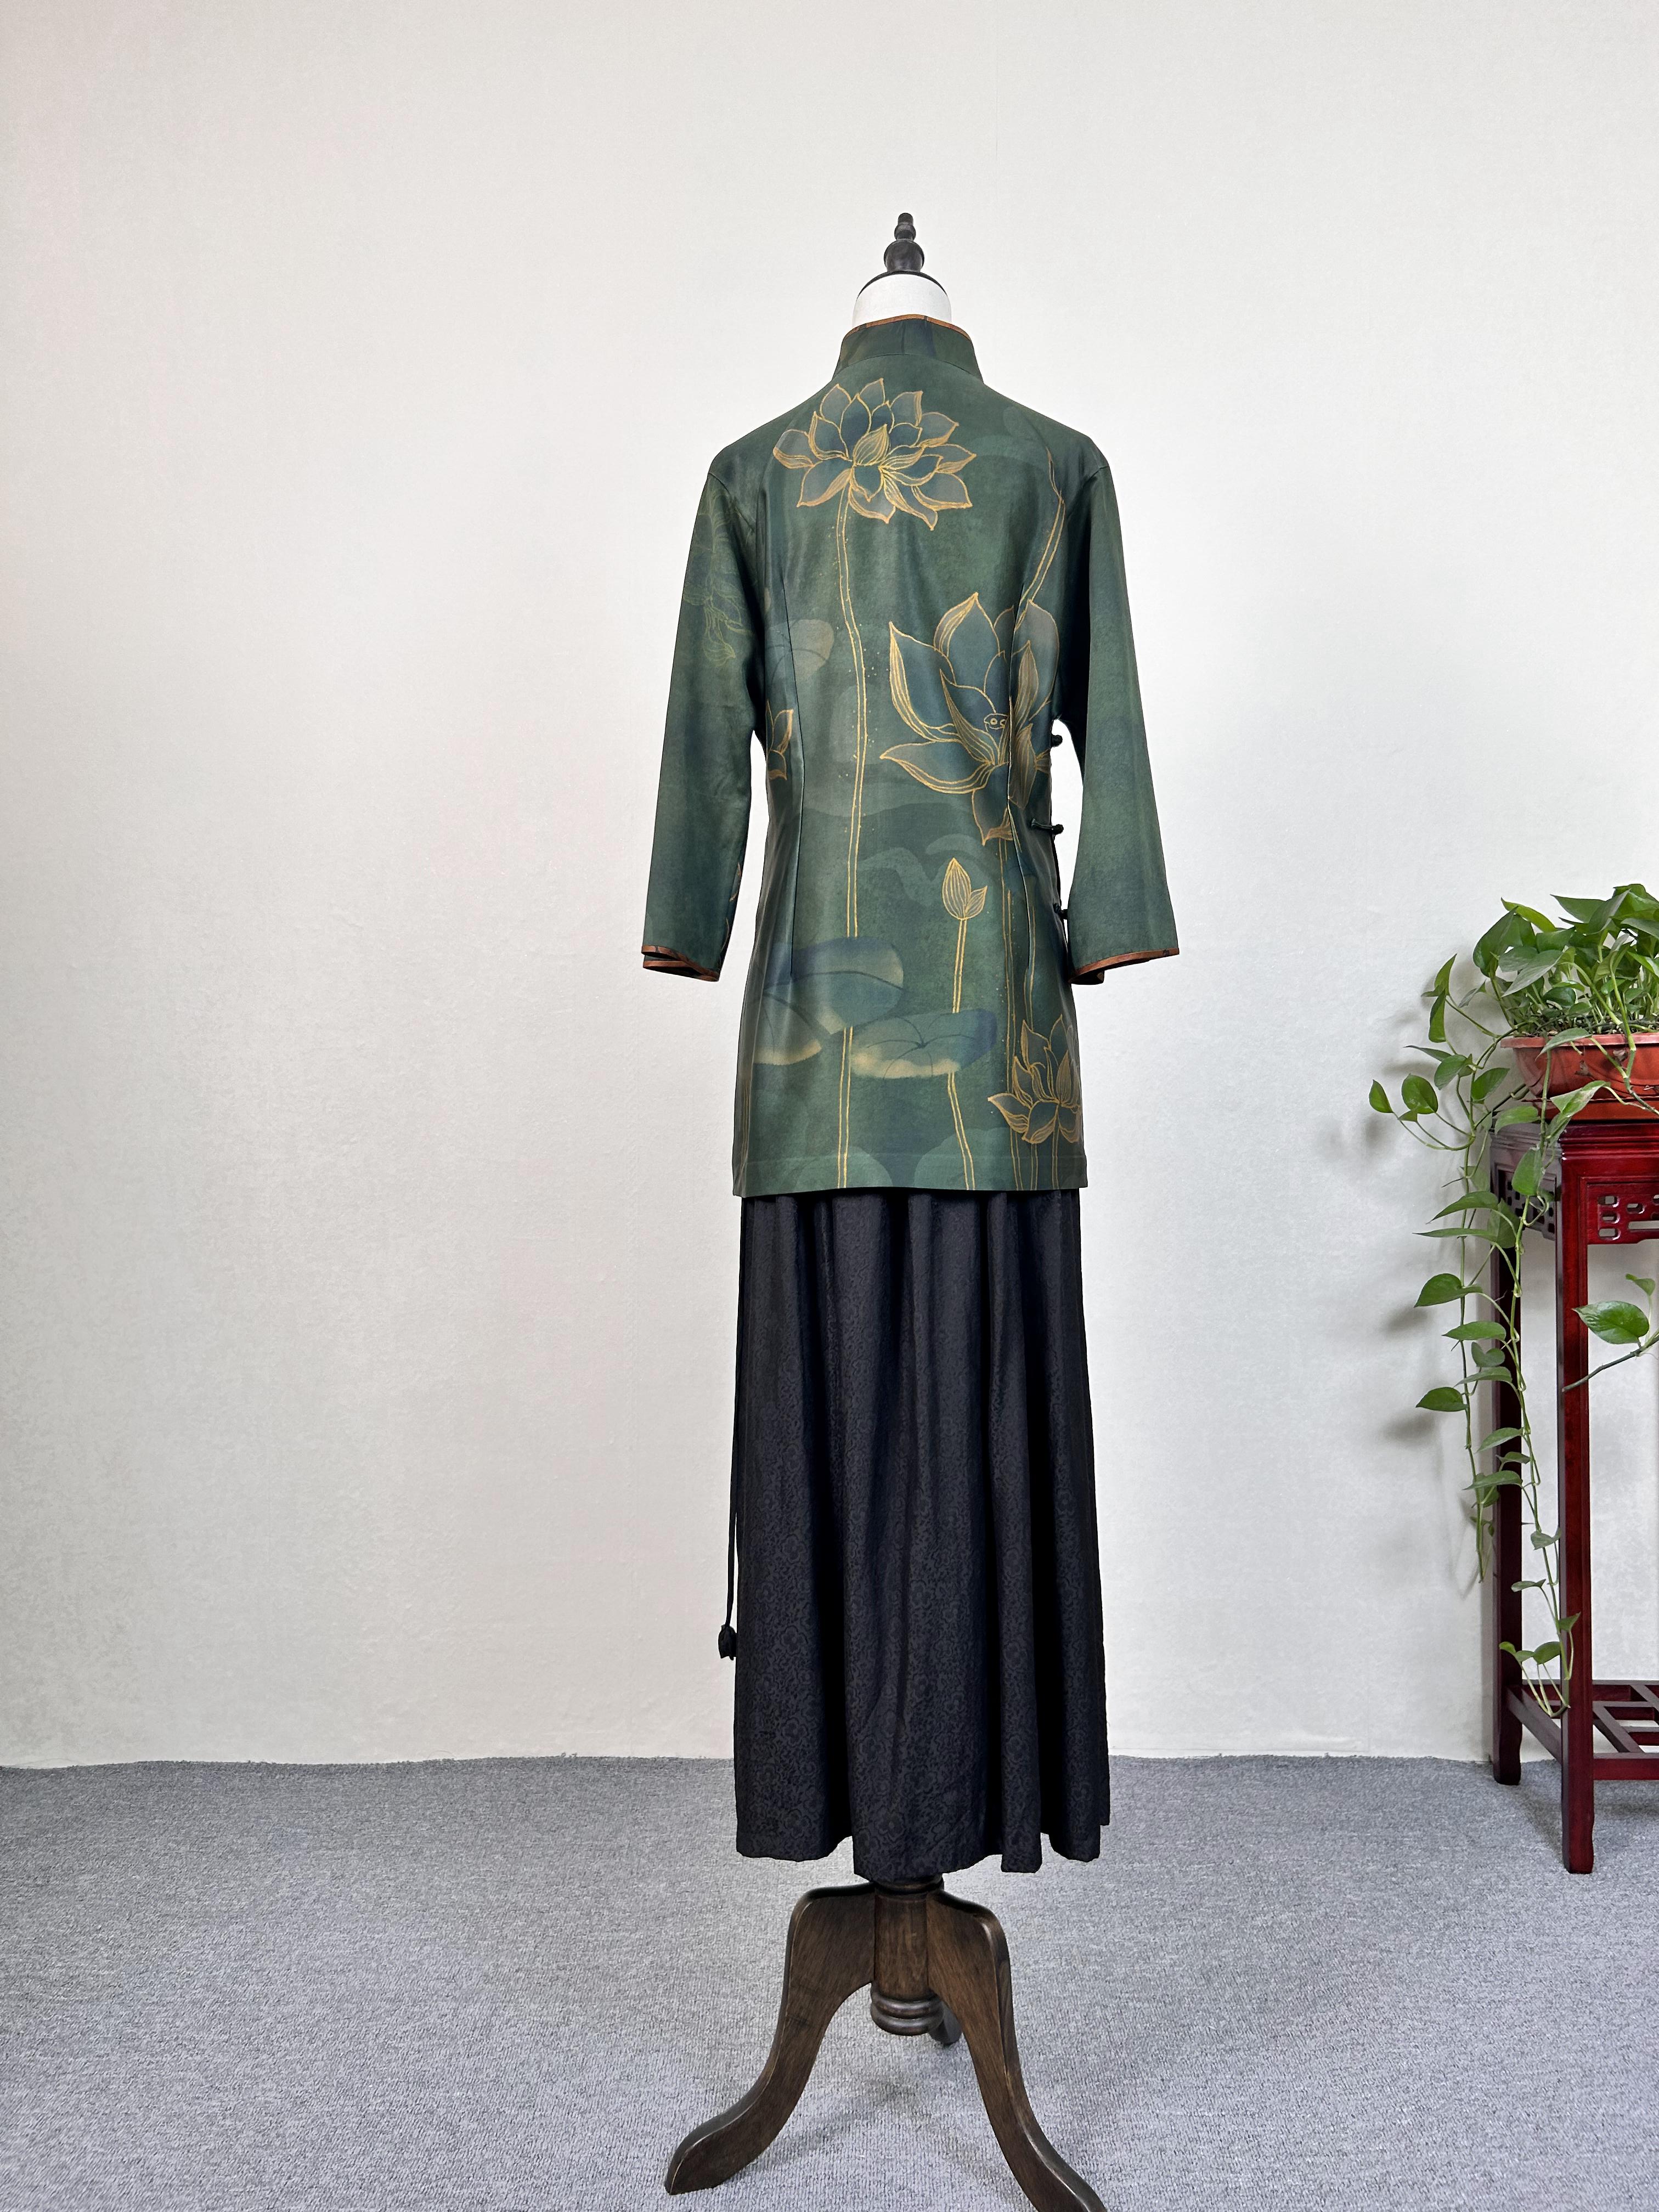 Fang Lu Guofeng Xiangyun Saao wears a top